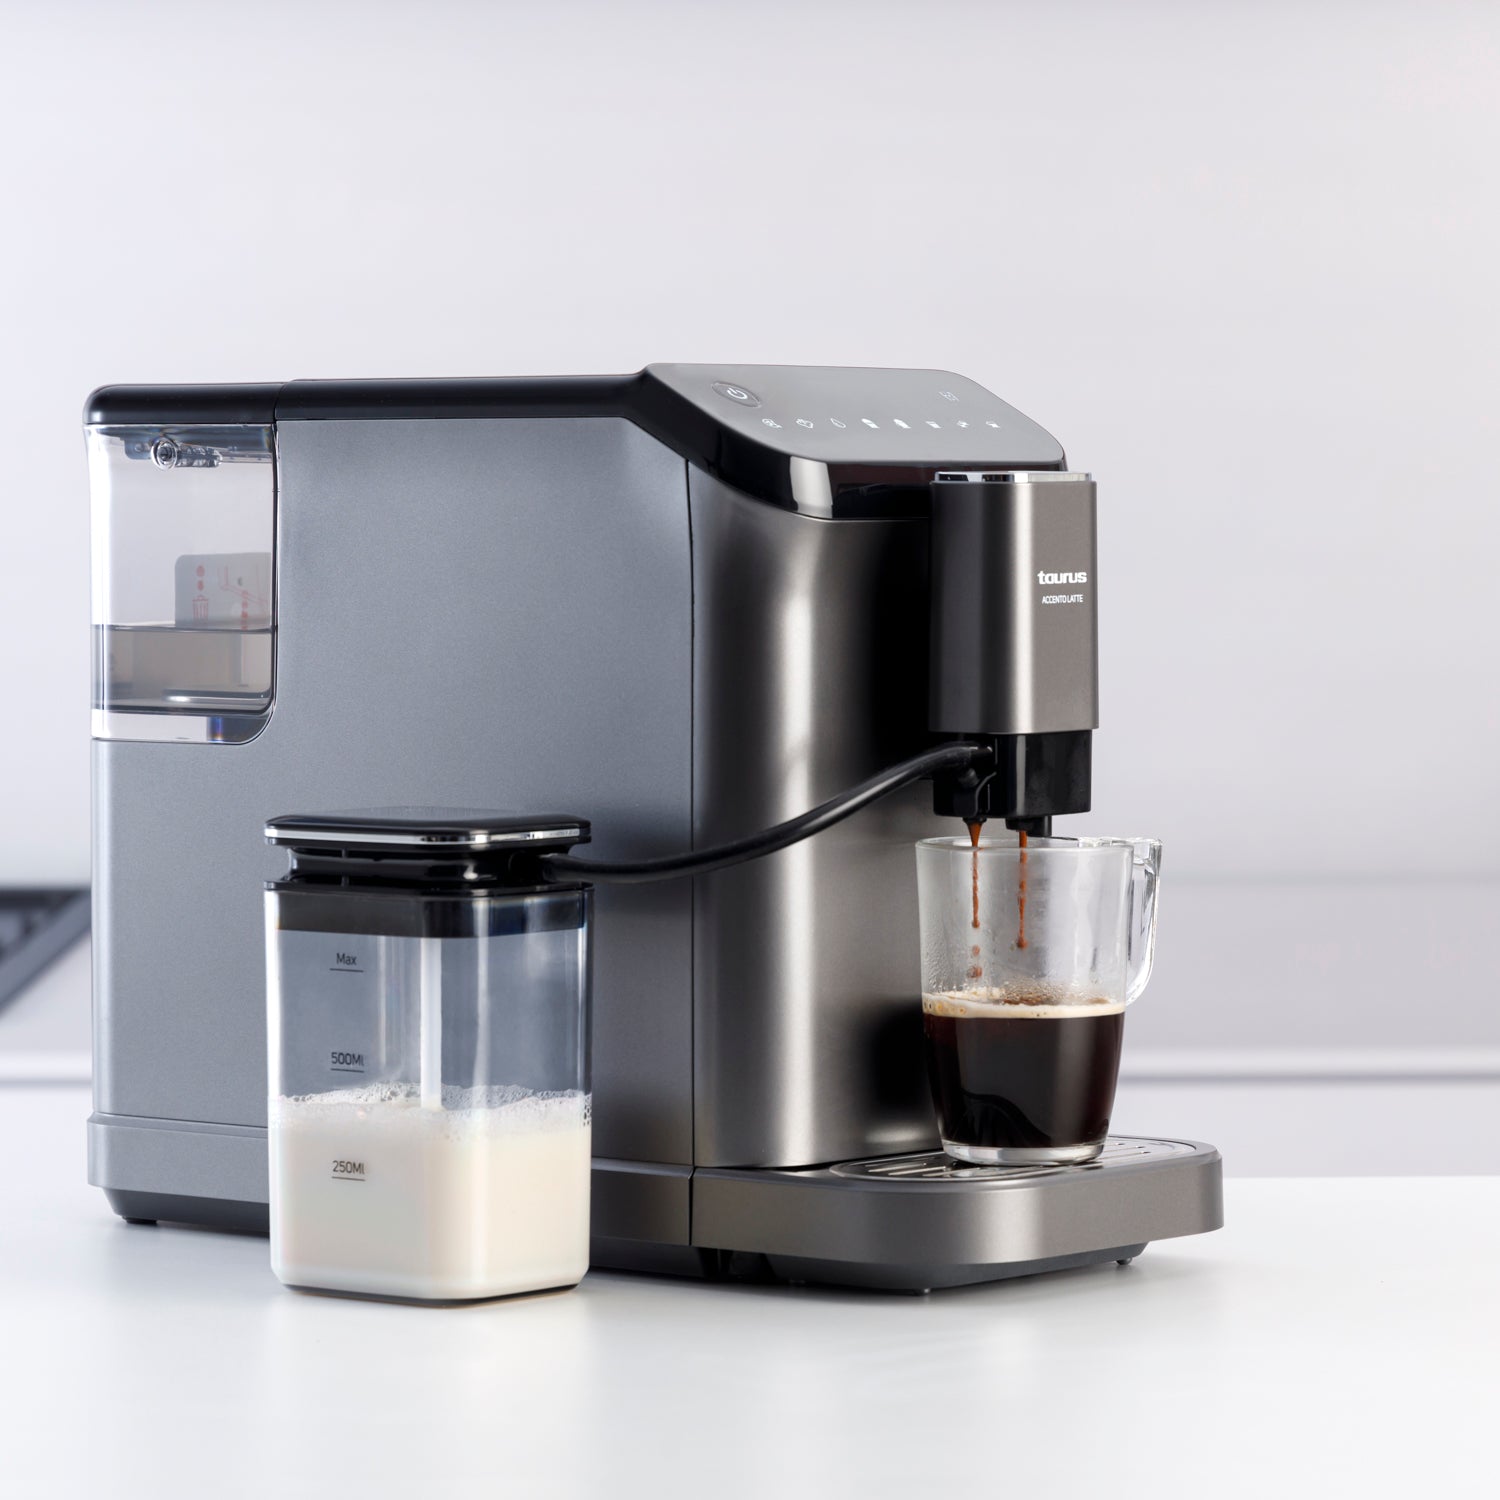 Cafetera espresso manual vs cafetera superautomática: cuál es mejor